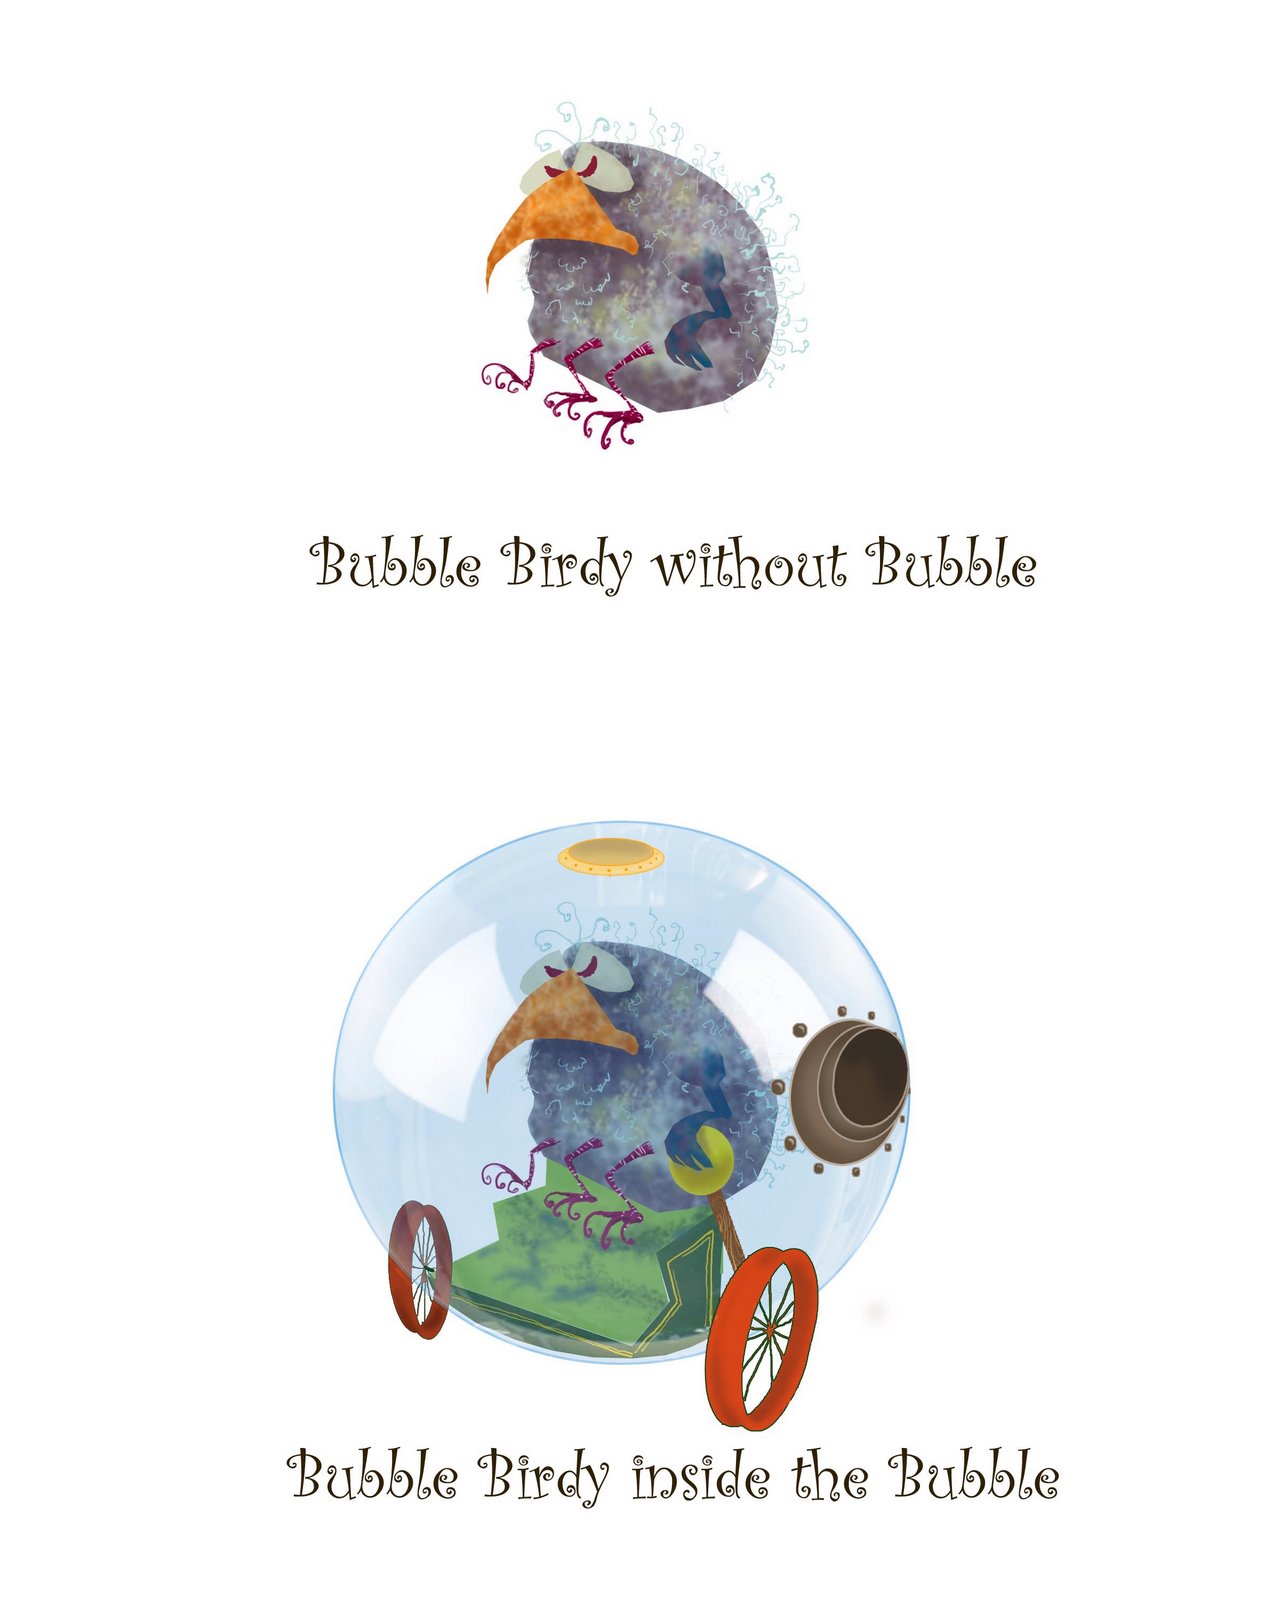 [BubbleBirdy.jpg]